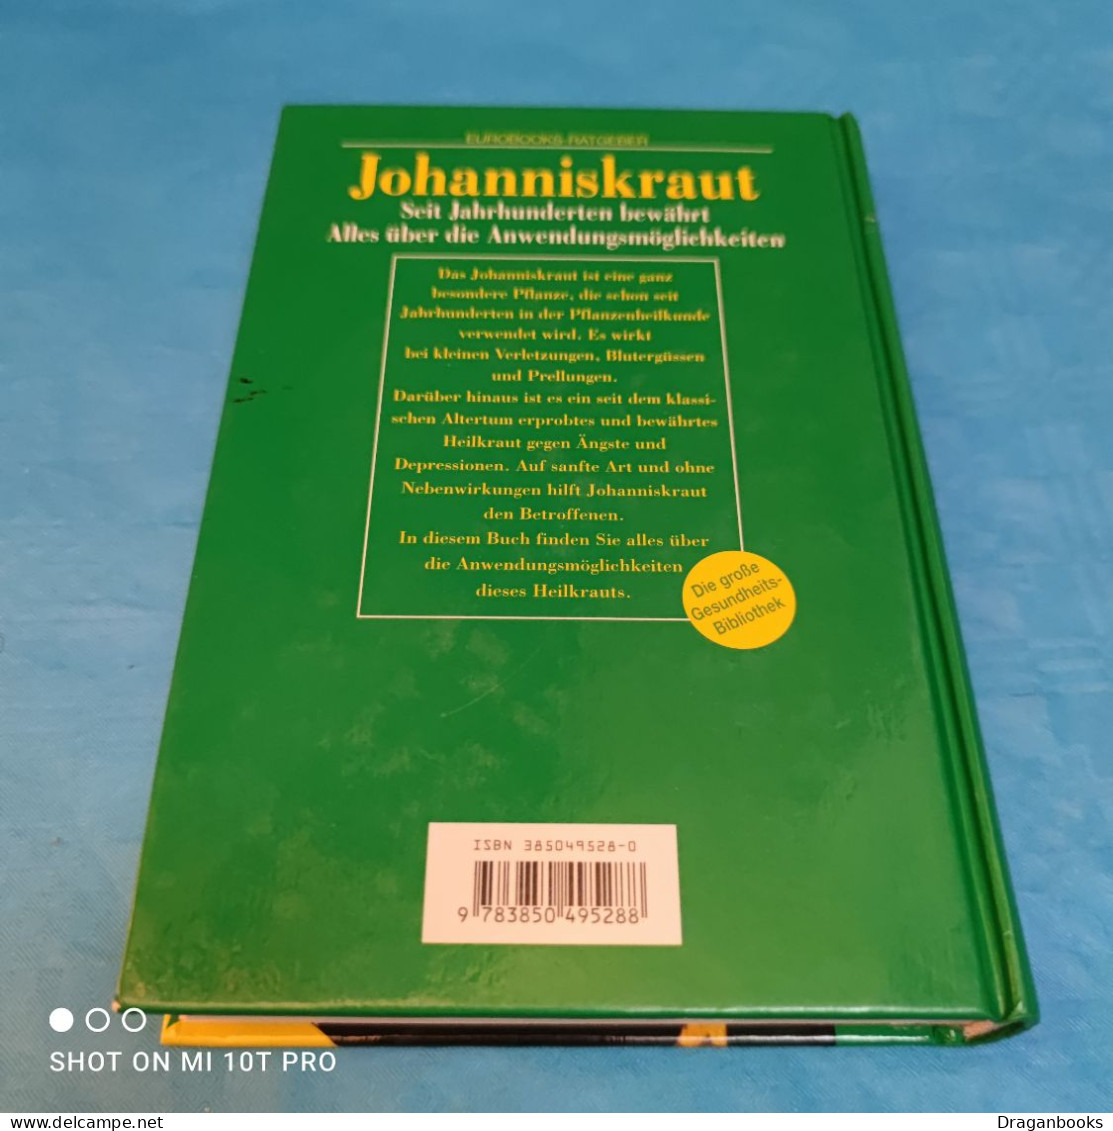 Johanniskraut - Botanik